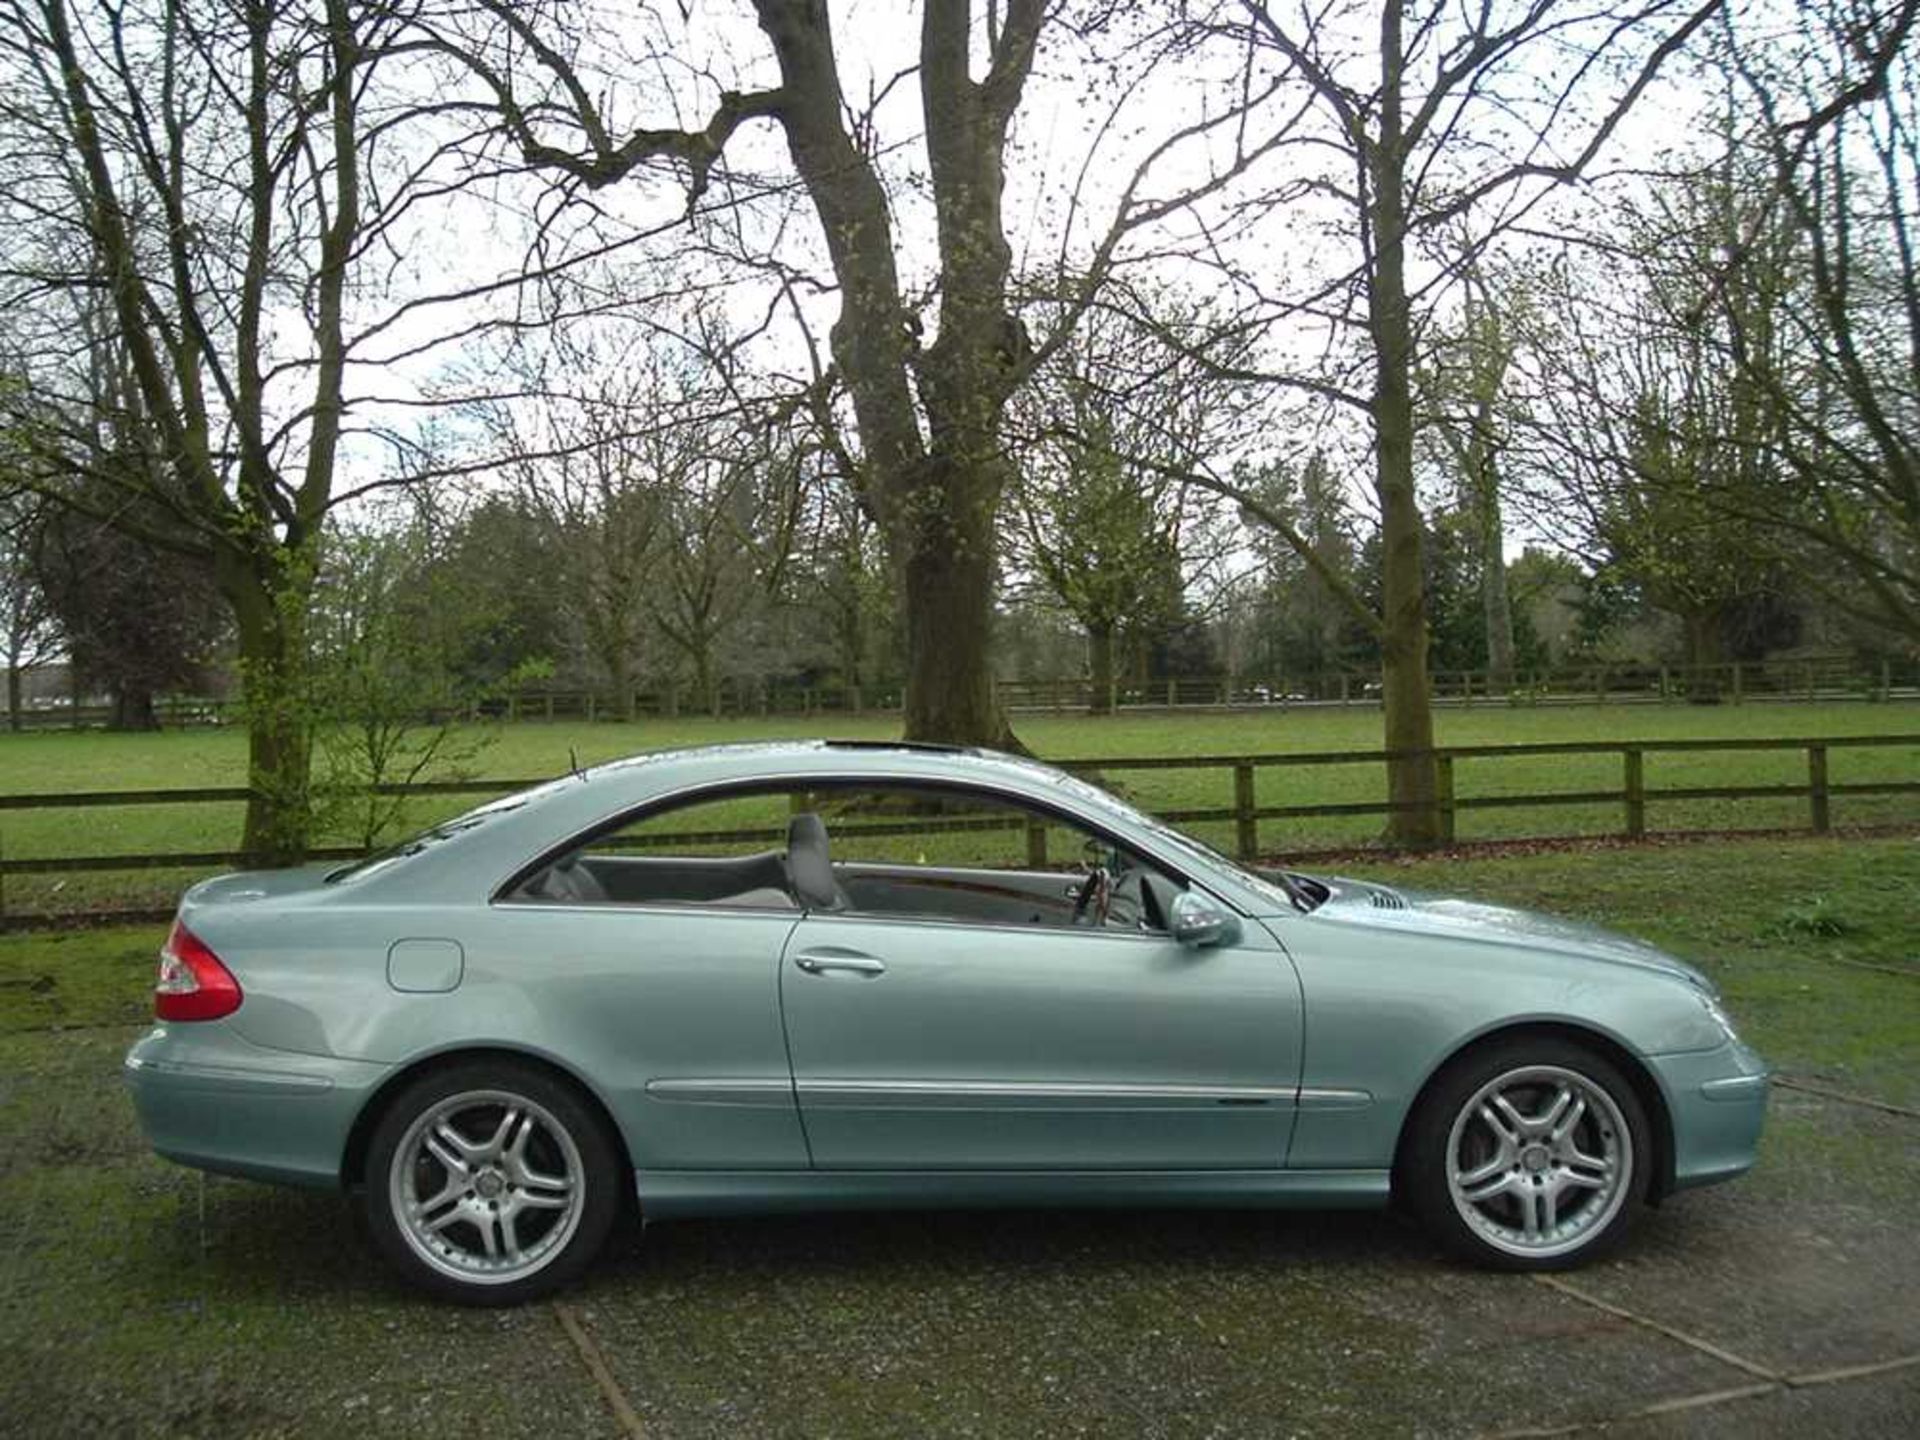 2002 Mercedes-Benz CLK 500 Elegance - Image 2 of 26